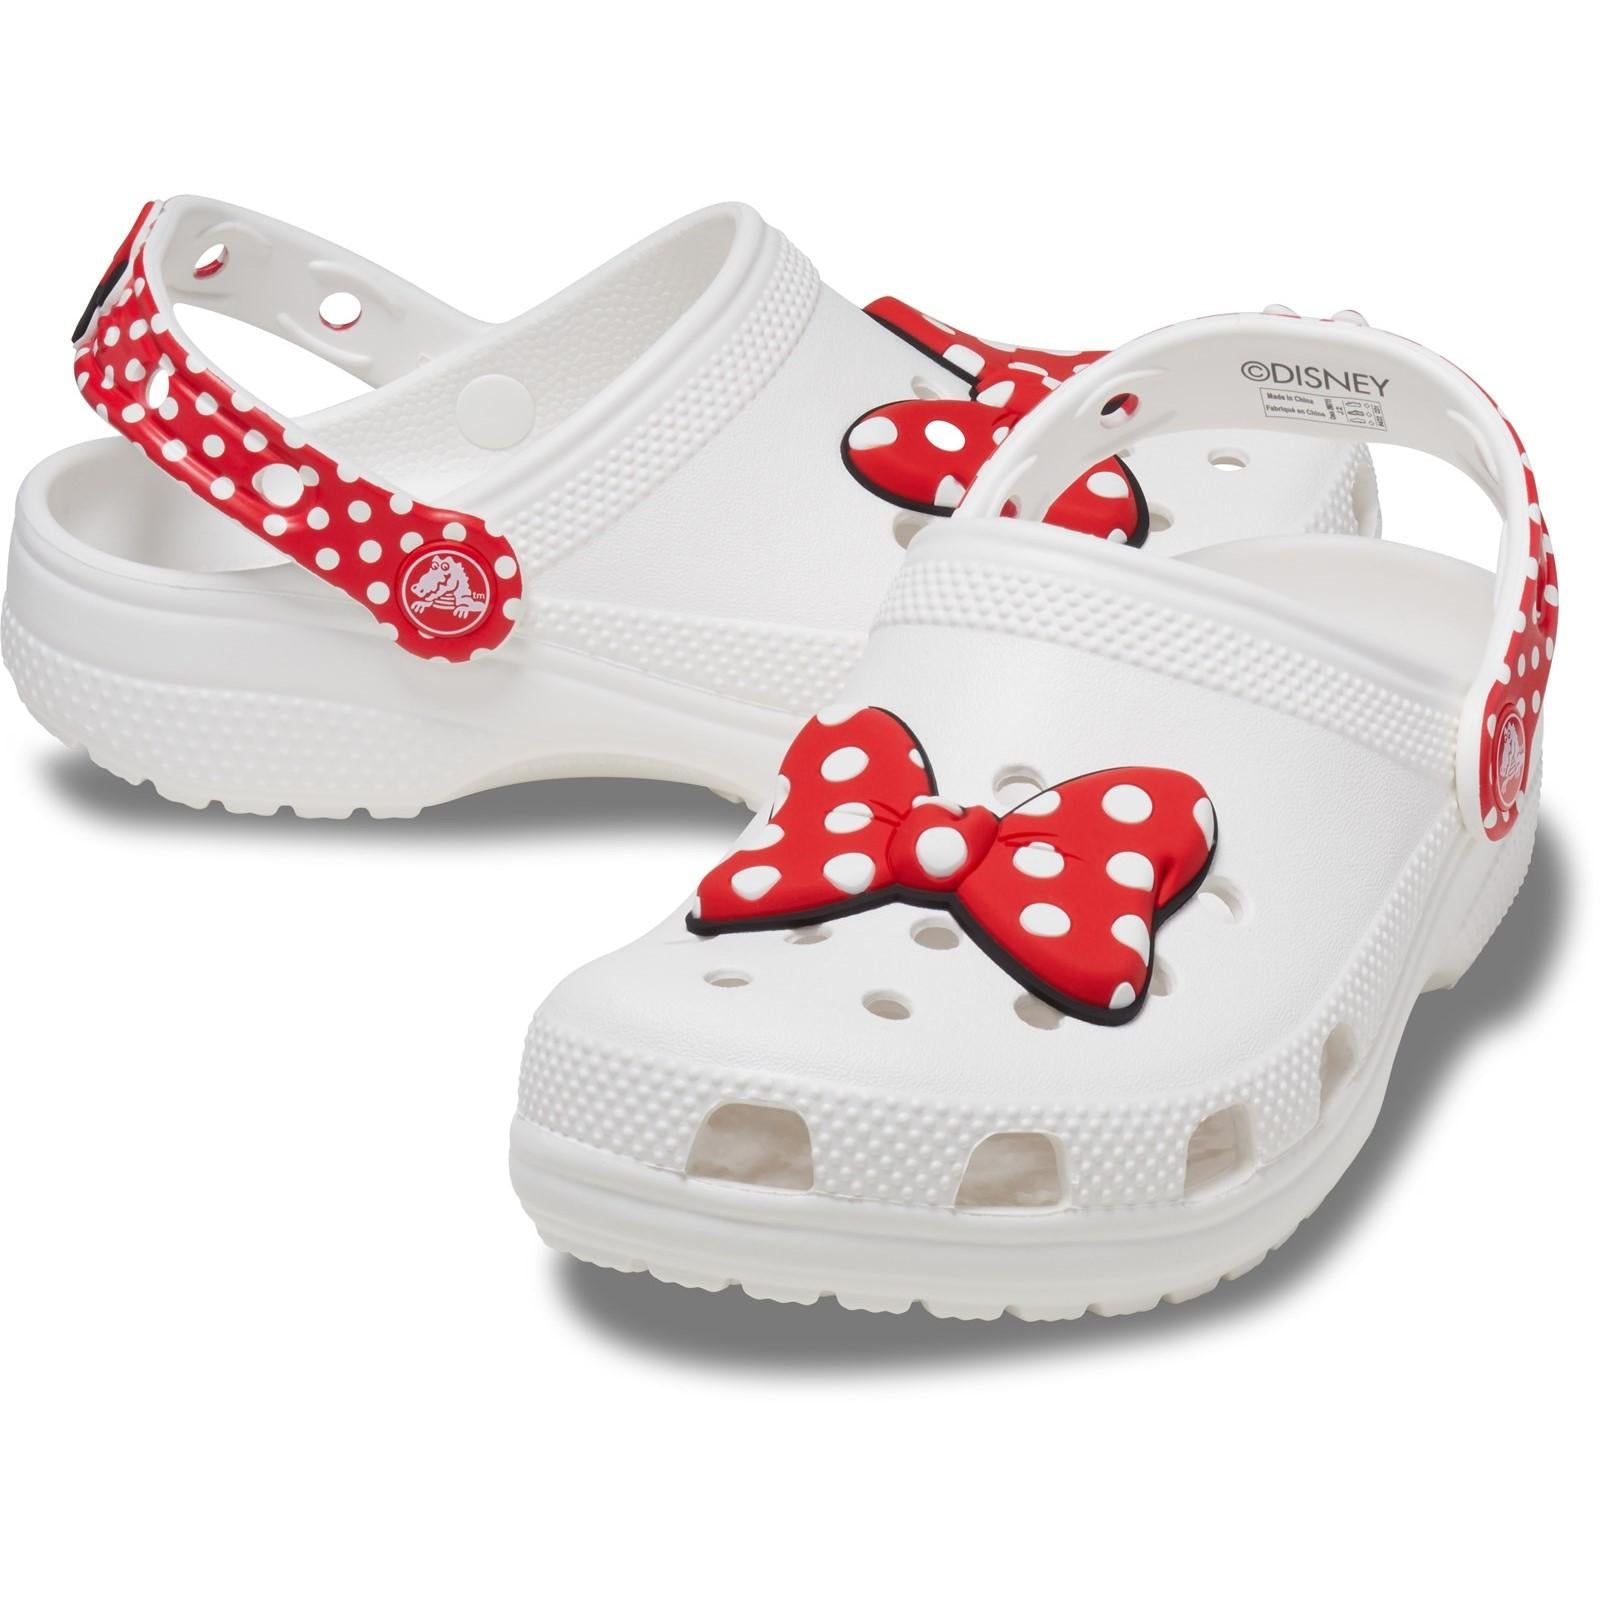 Crocs Classic Disney Minnie Mouse Clog Sandals